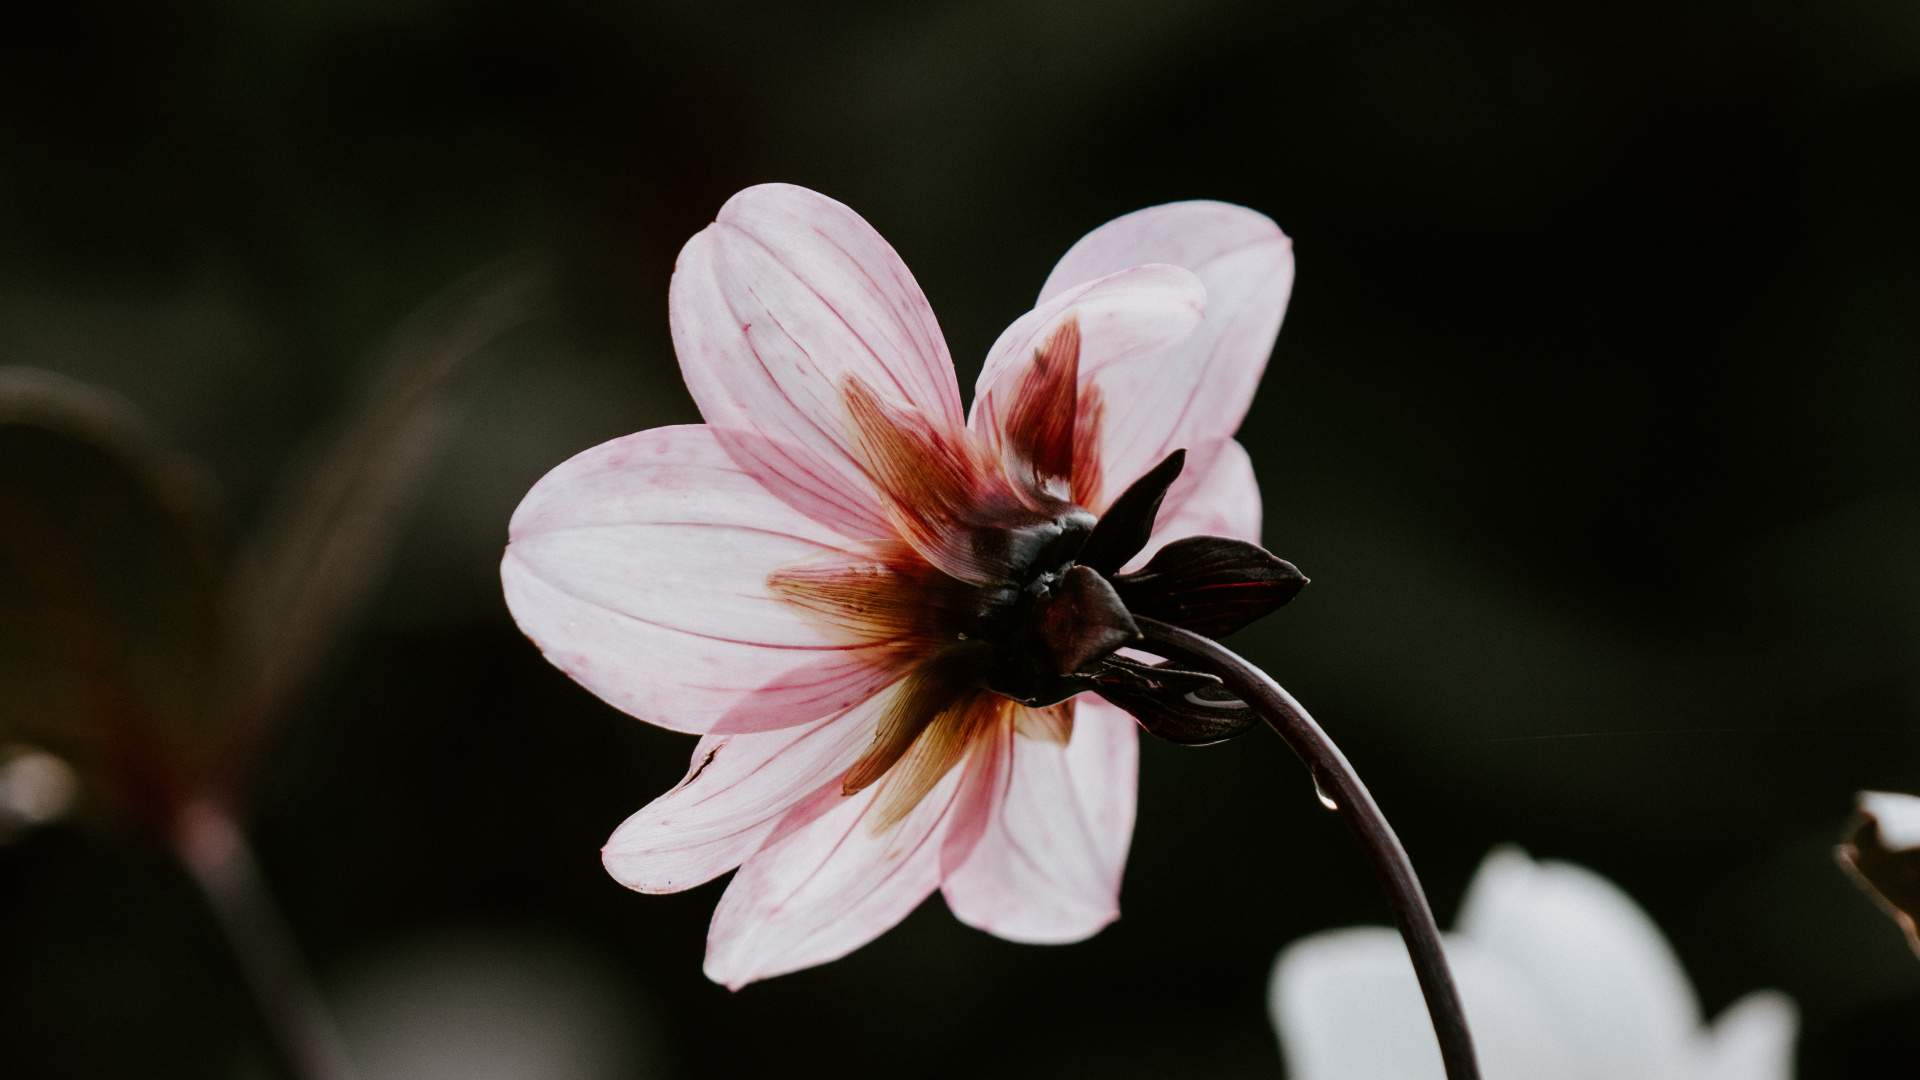 Pink and White Flower in Tilt Shift Lens. Wallpaper in 1920x1080 Resolution